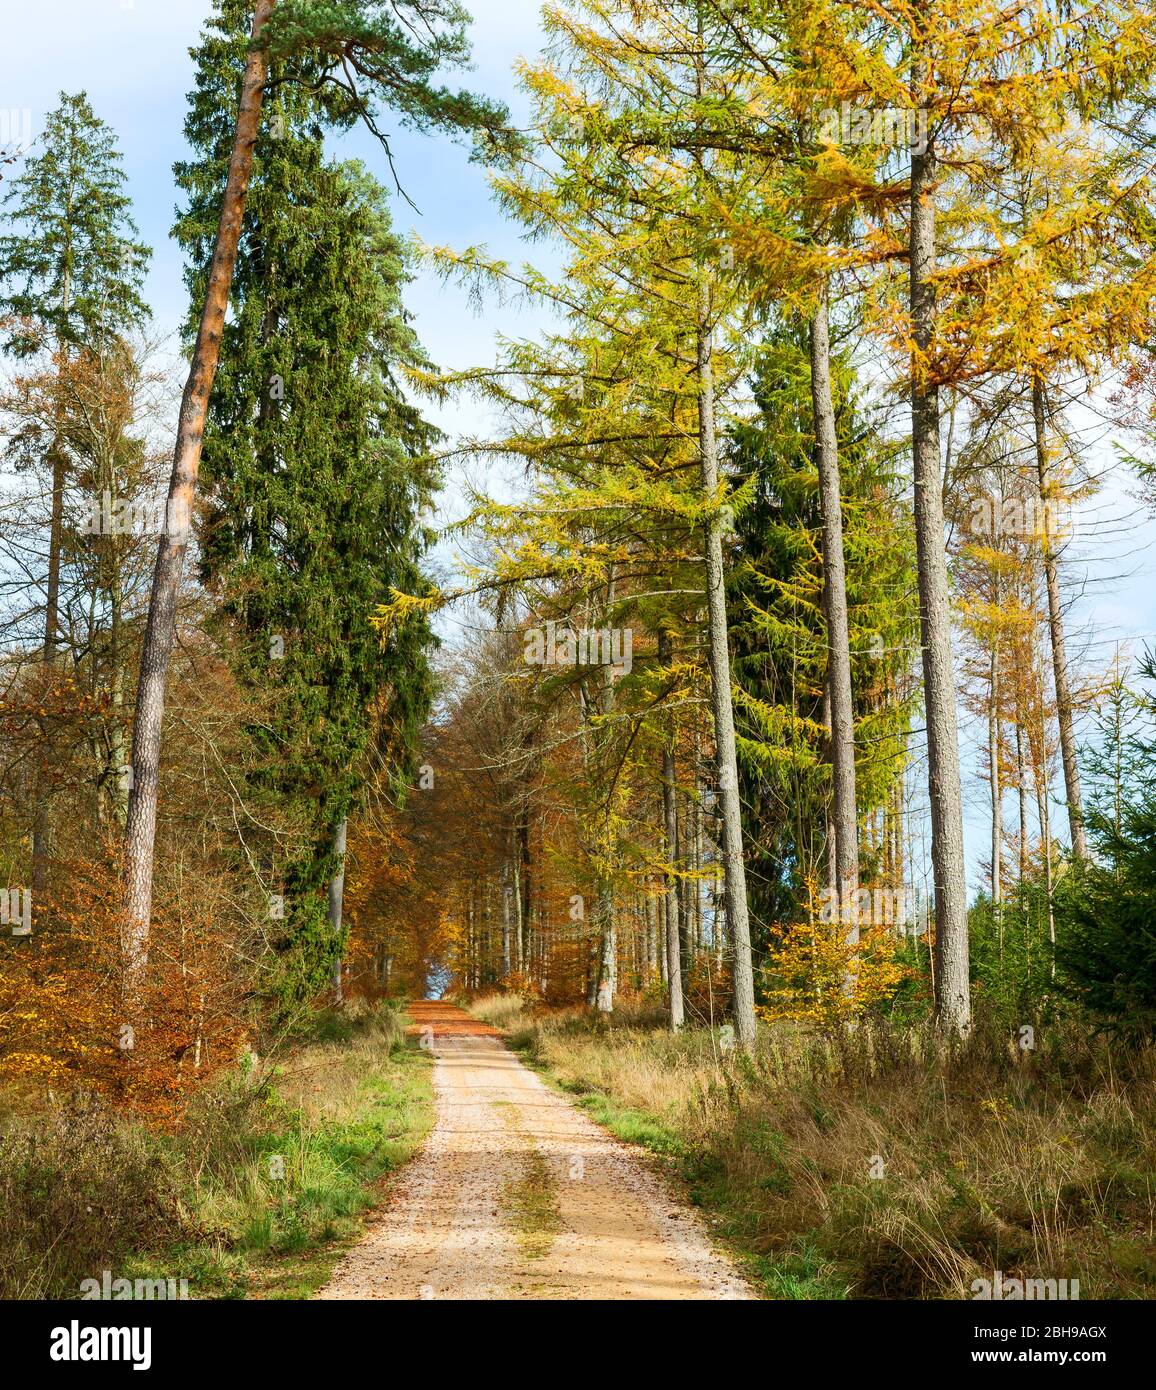 Germania, Baden-Württemberg, Sigmaringen, percorso attraverso la foresta mista di conifere nella foresta Josefslust, un terreno di caccia della Casa di Hohenzollern. Il parco Josefslust è aperto al pubblico come area ricreativa. Foto Stock